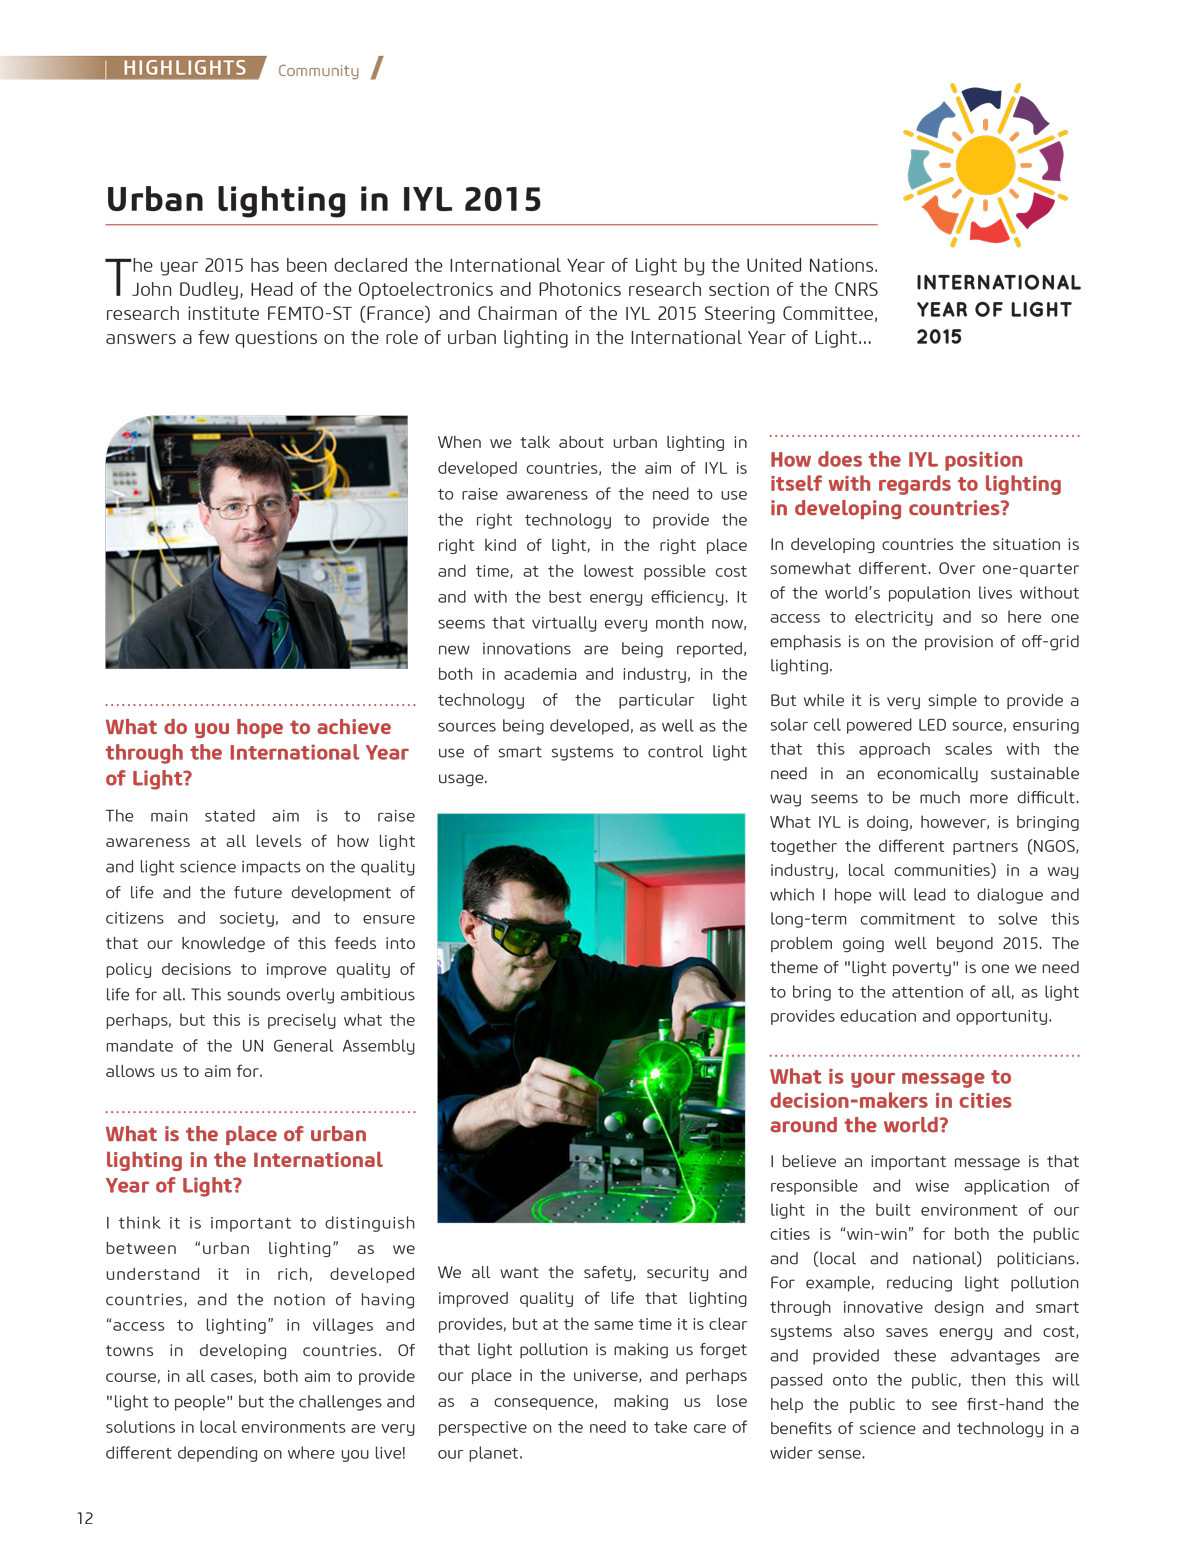 "Eclairage urbain dans l’année internationale de la lumière 2015, Interview de John Dudley - Cities & Lighting, LUCI network magazine, n°3, Avril 2015